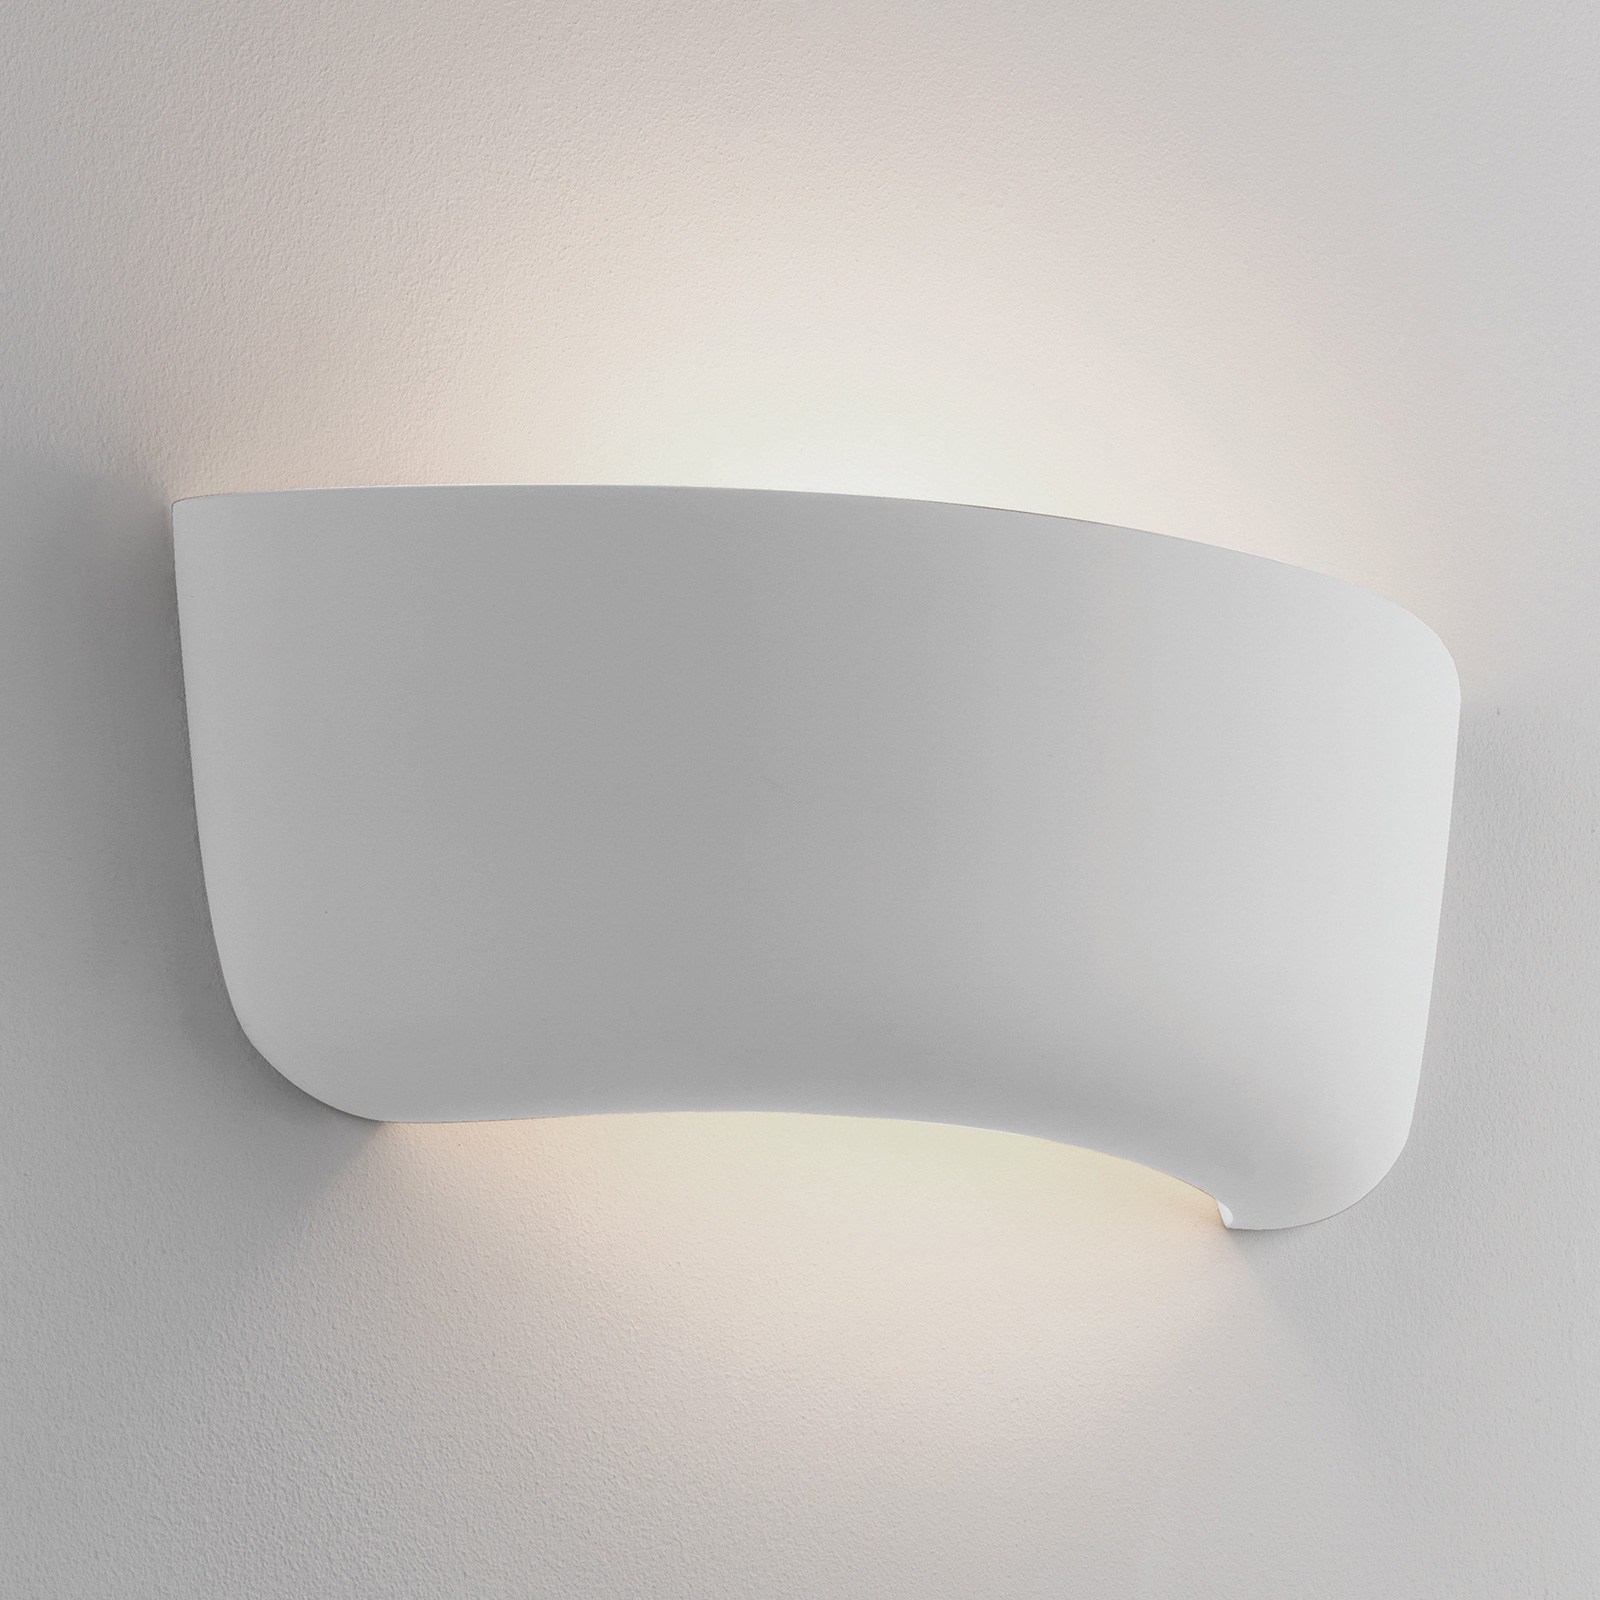 Astro Gosford 340 lampa ścienna z ceramiki, 34 cm